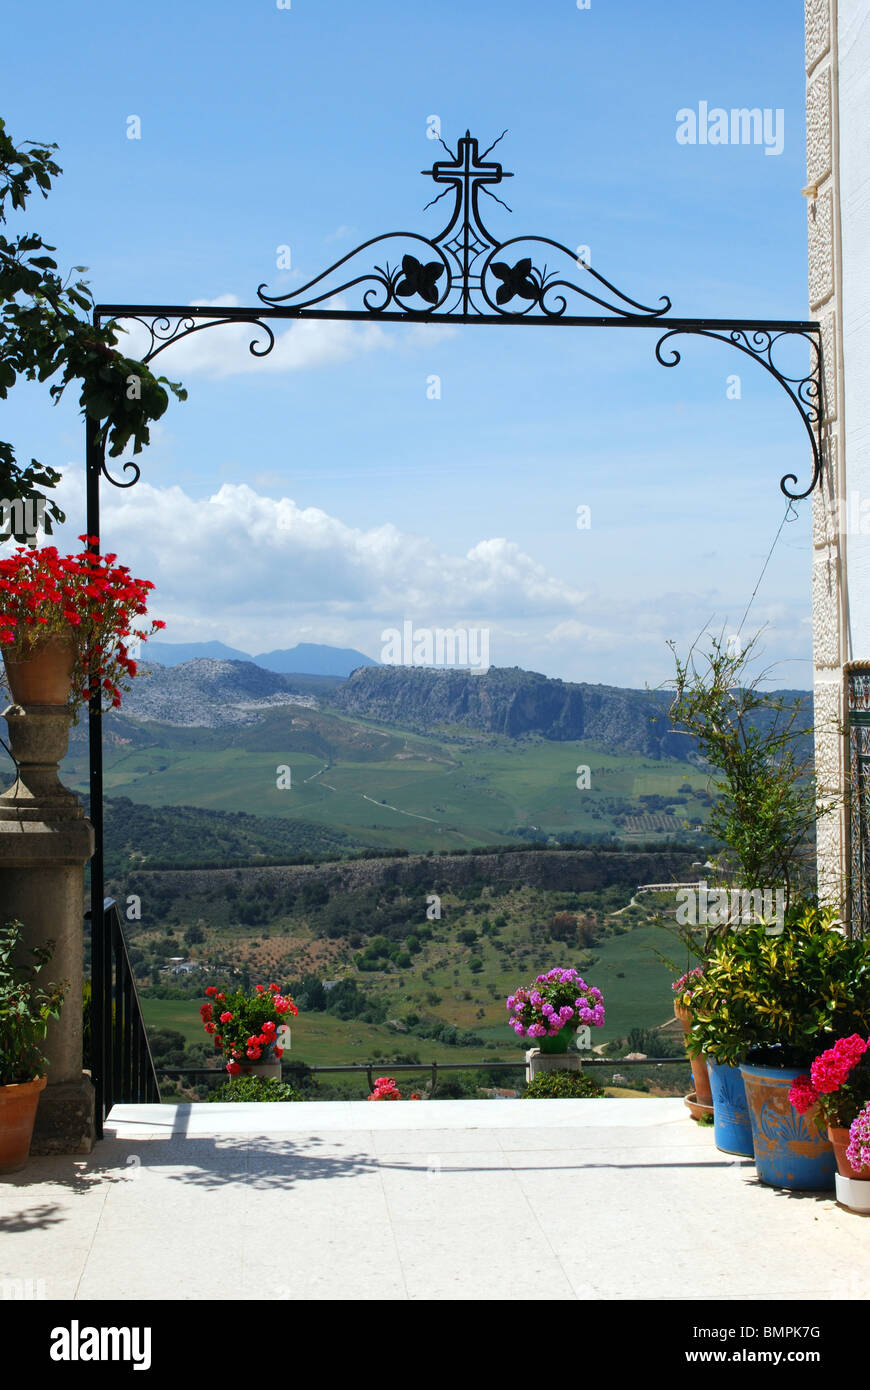 Schmiedeeisen-Bogen mit Blick auf die Landschaft, Don Boscos House, Ronda, Provinz Malaga, Andalusien, Südspanien, Westeuropa. Stockfoto